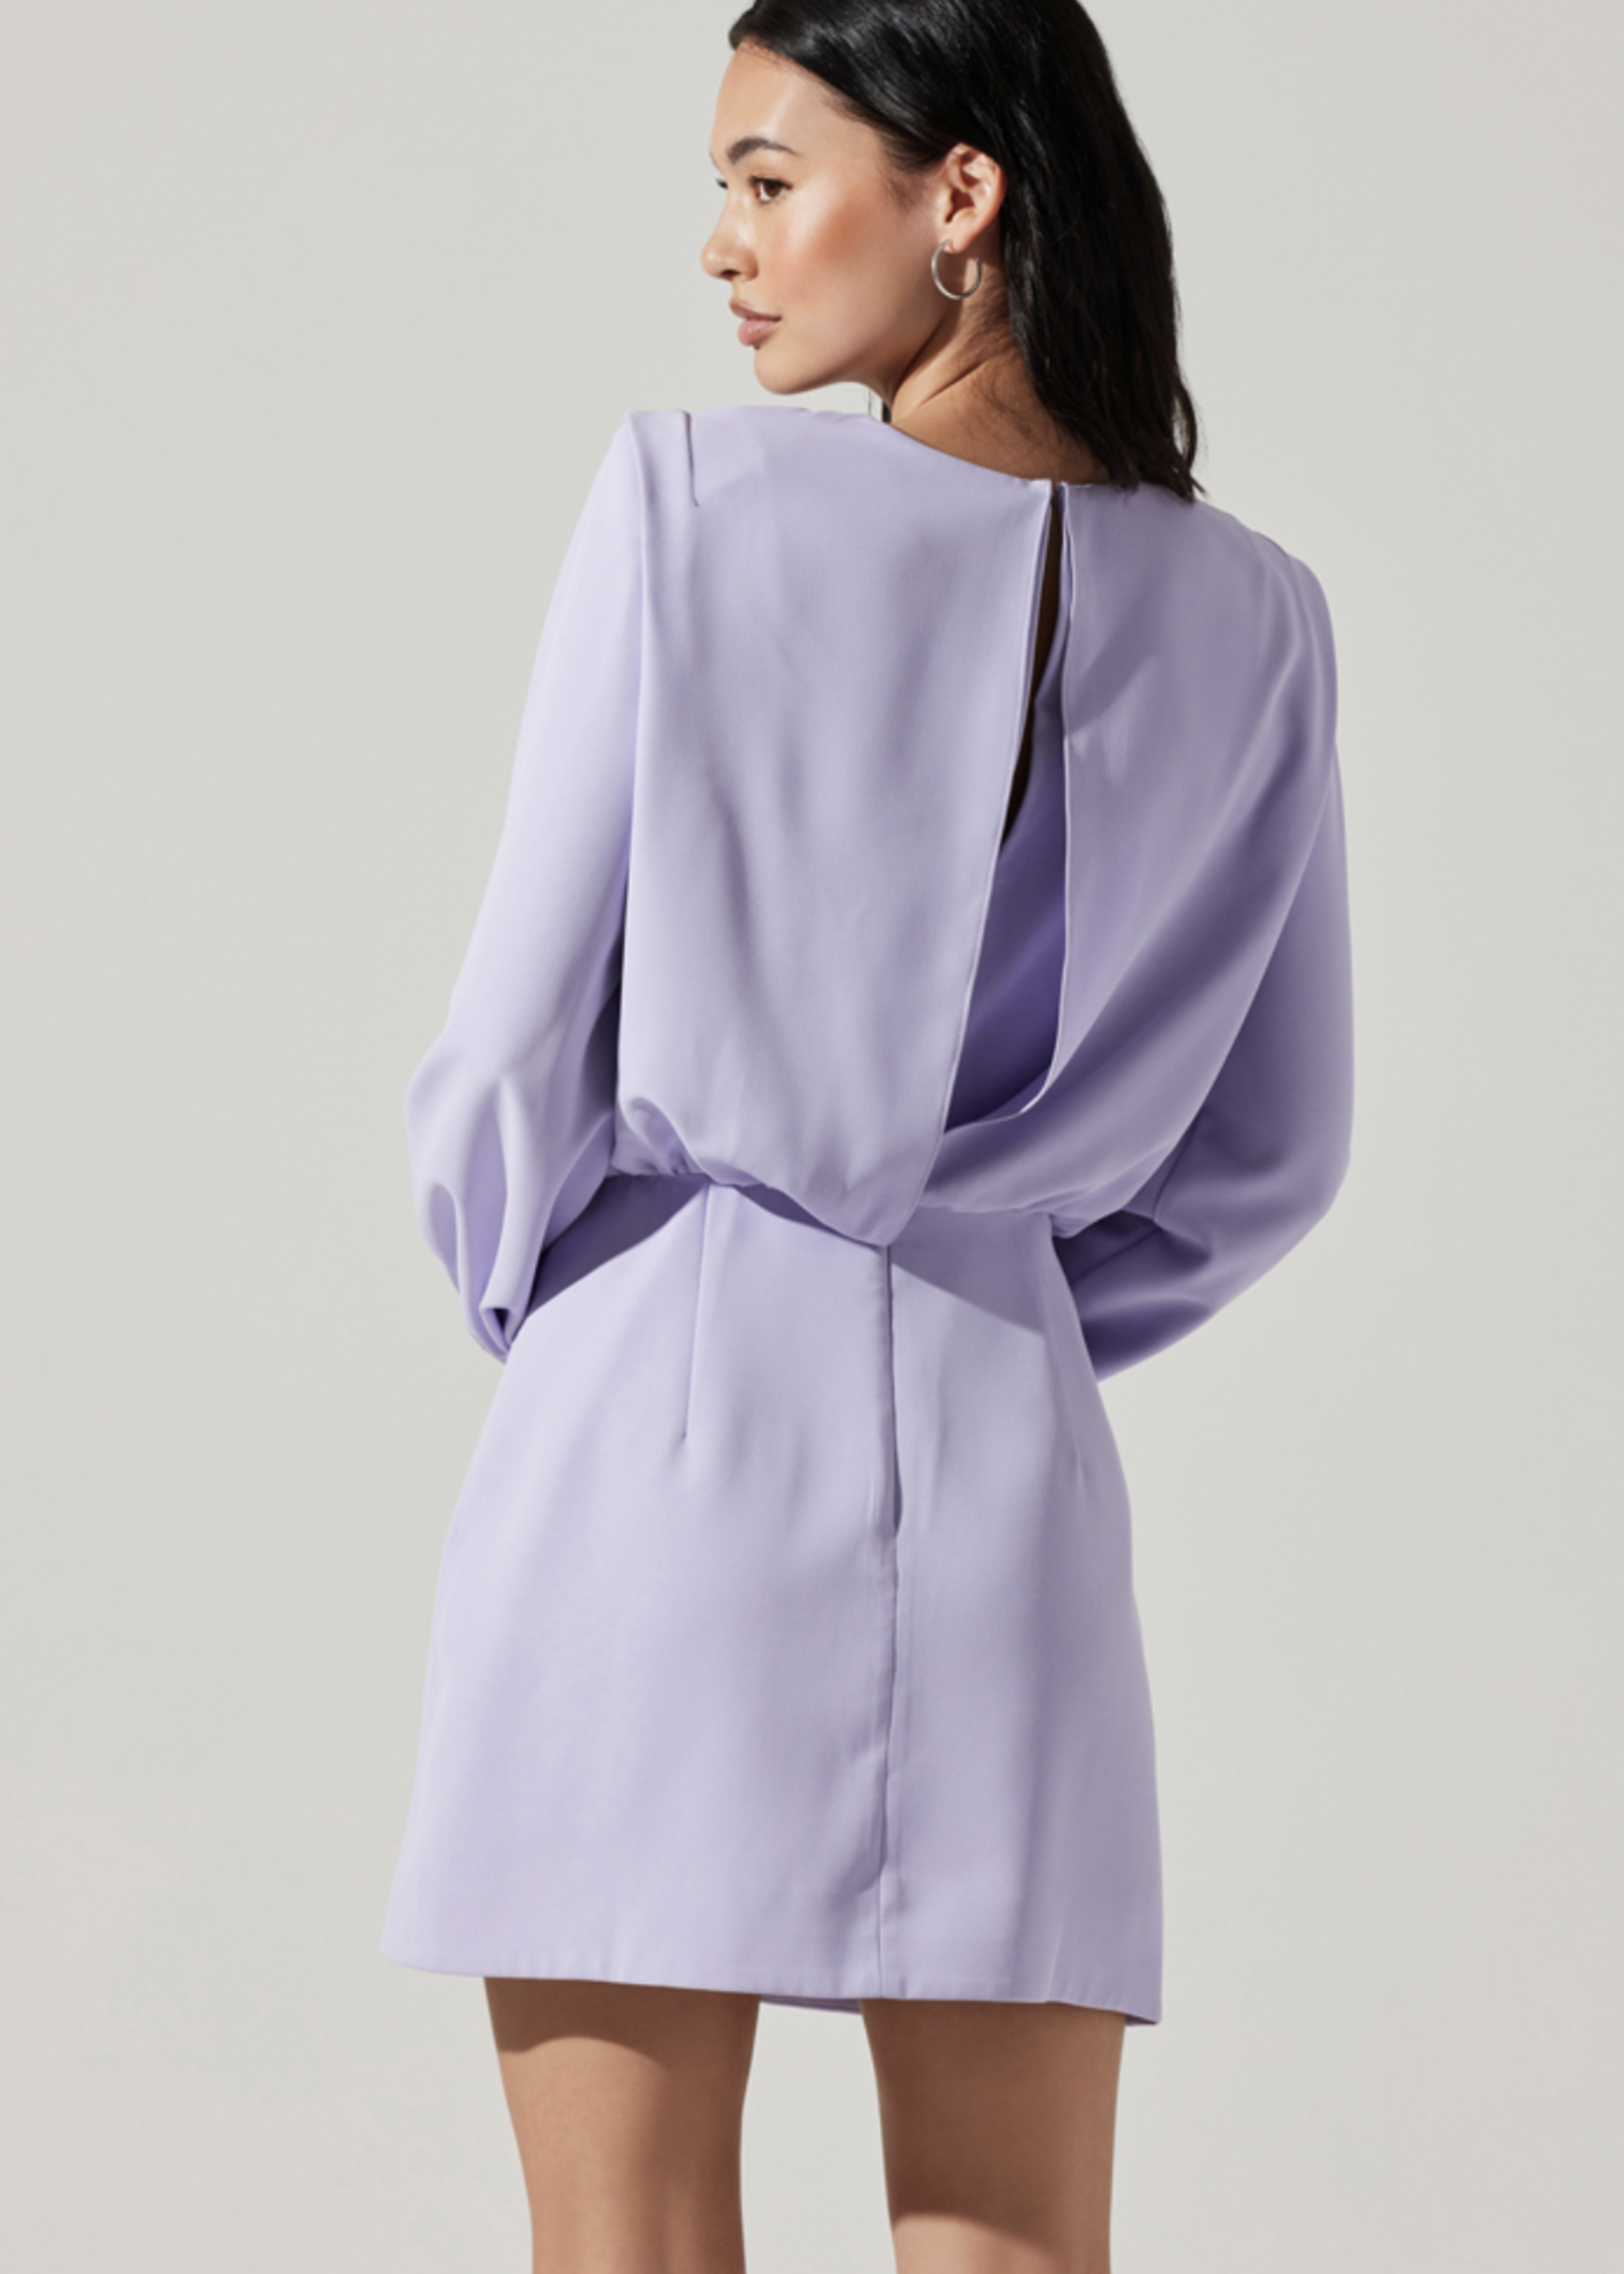 Elitaire Boutique Lunden Dress in Lavender